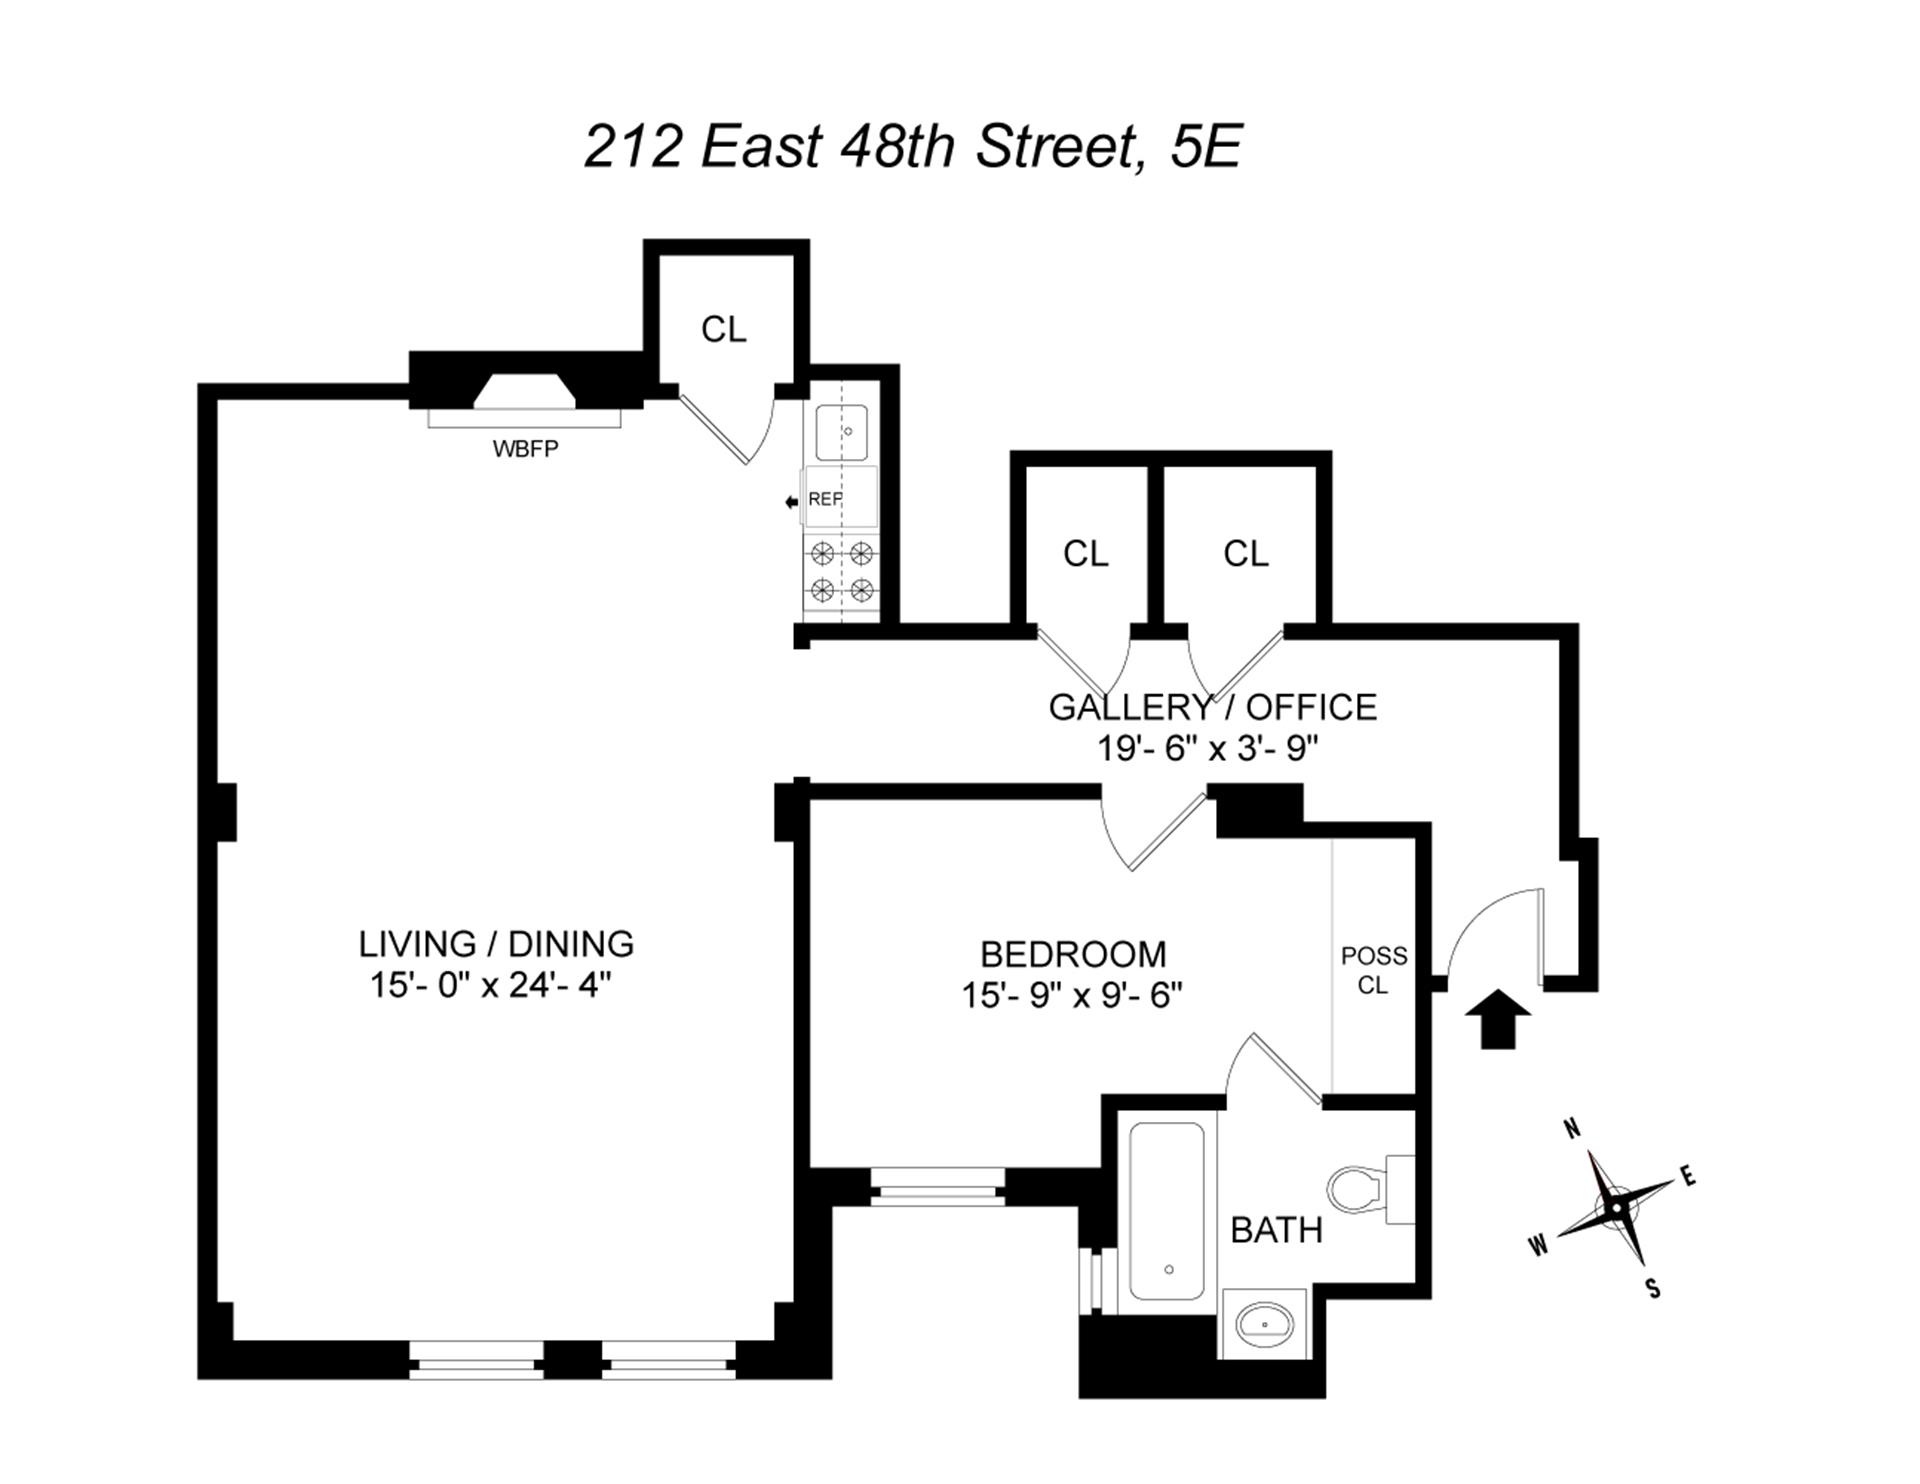 Floorplan for 212 East 48th Street, 5E